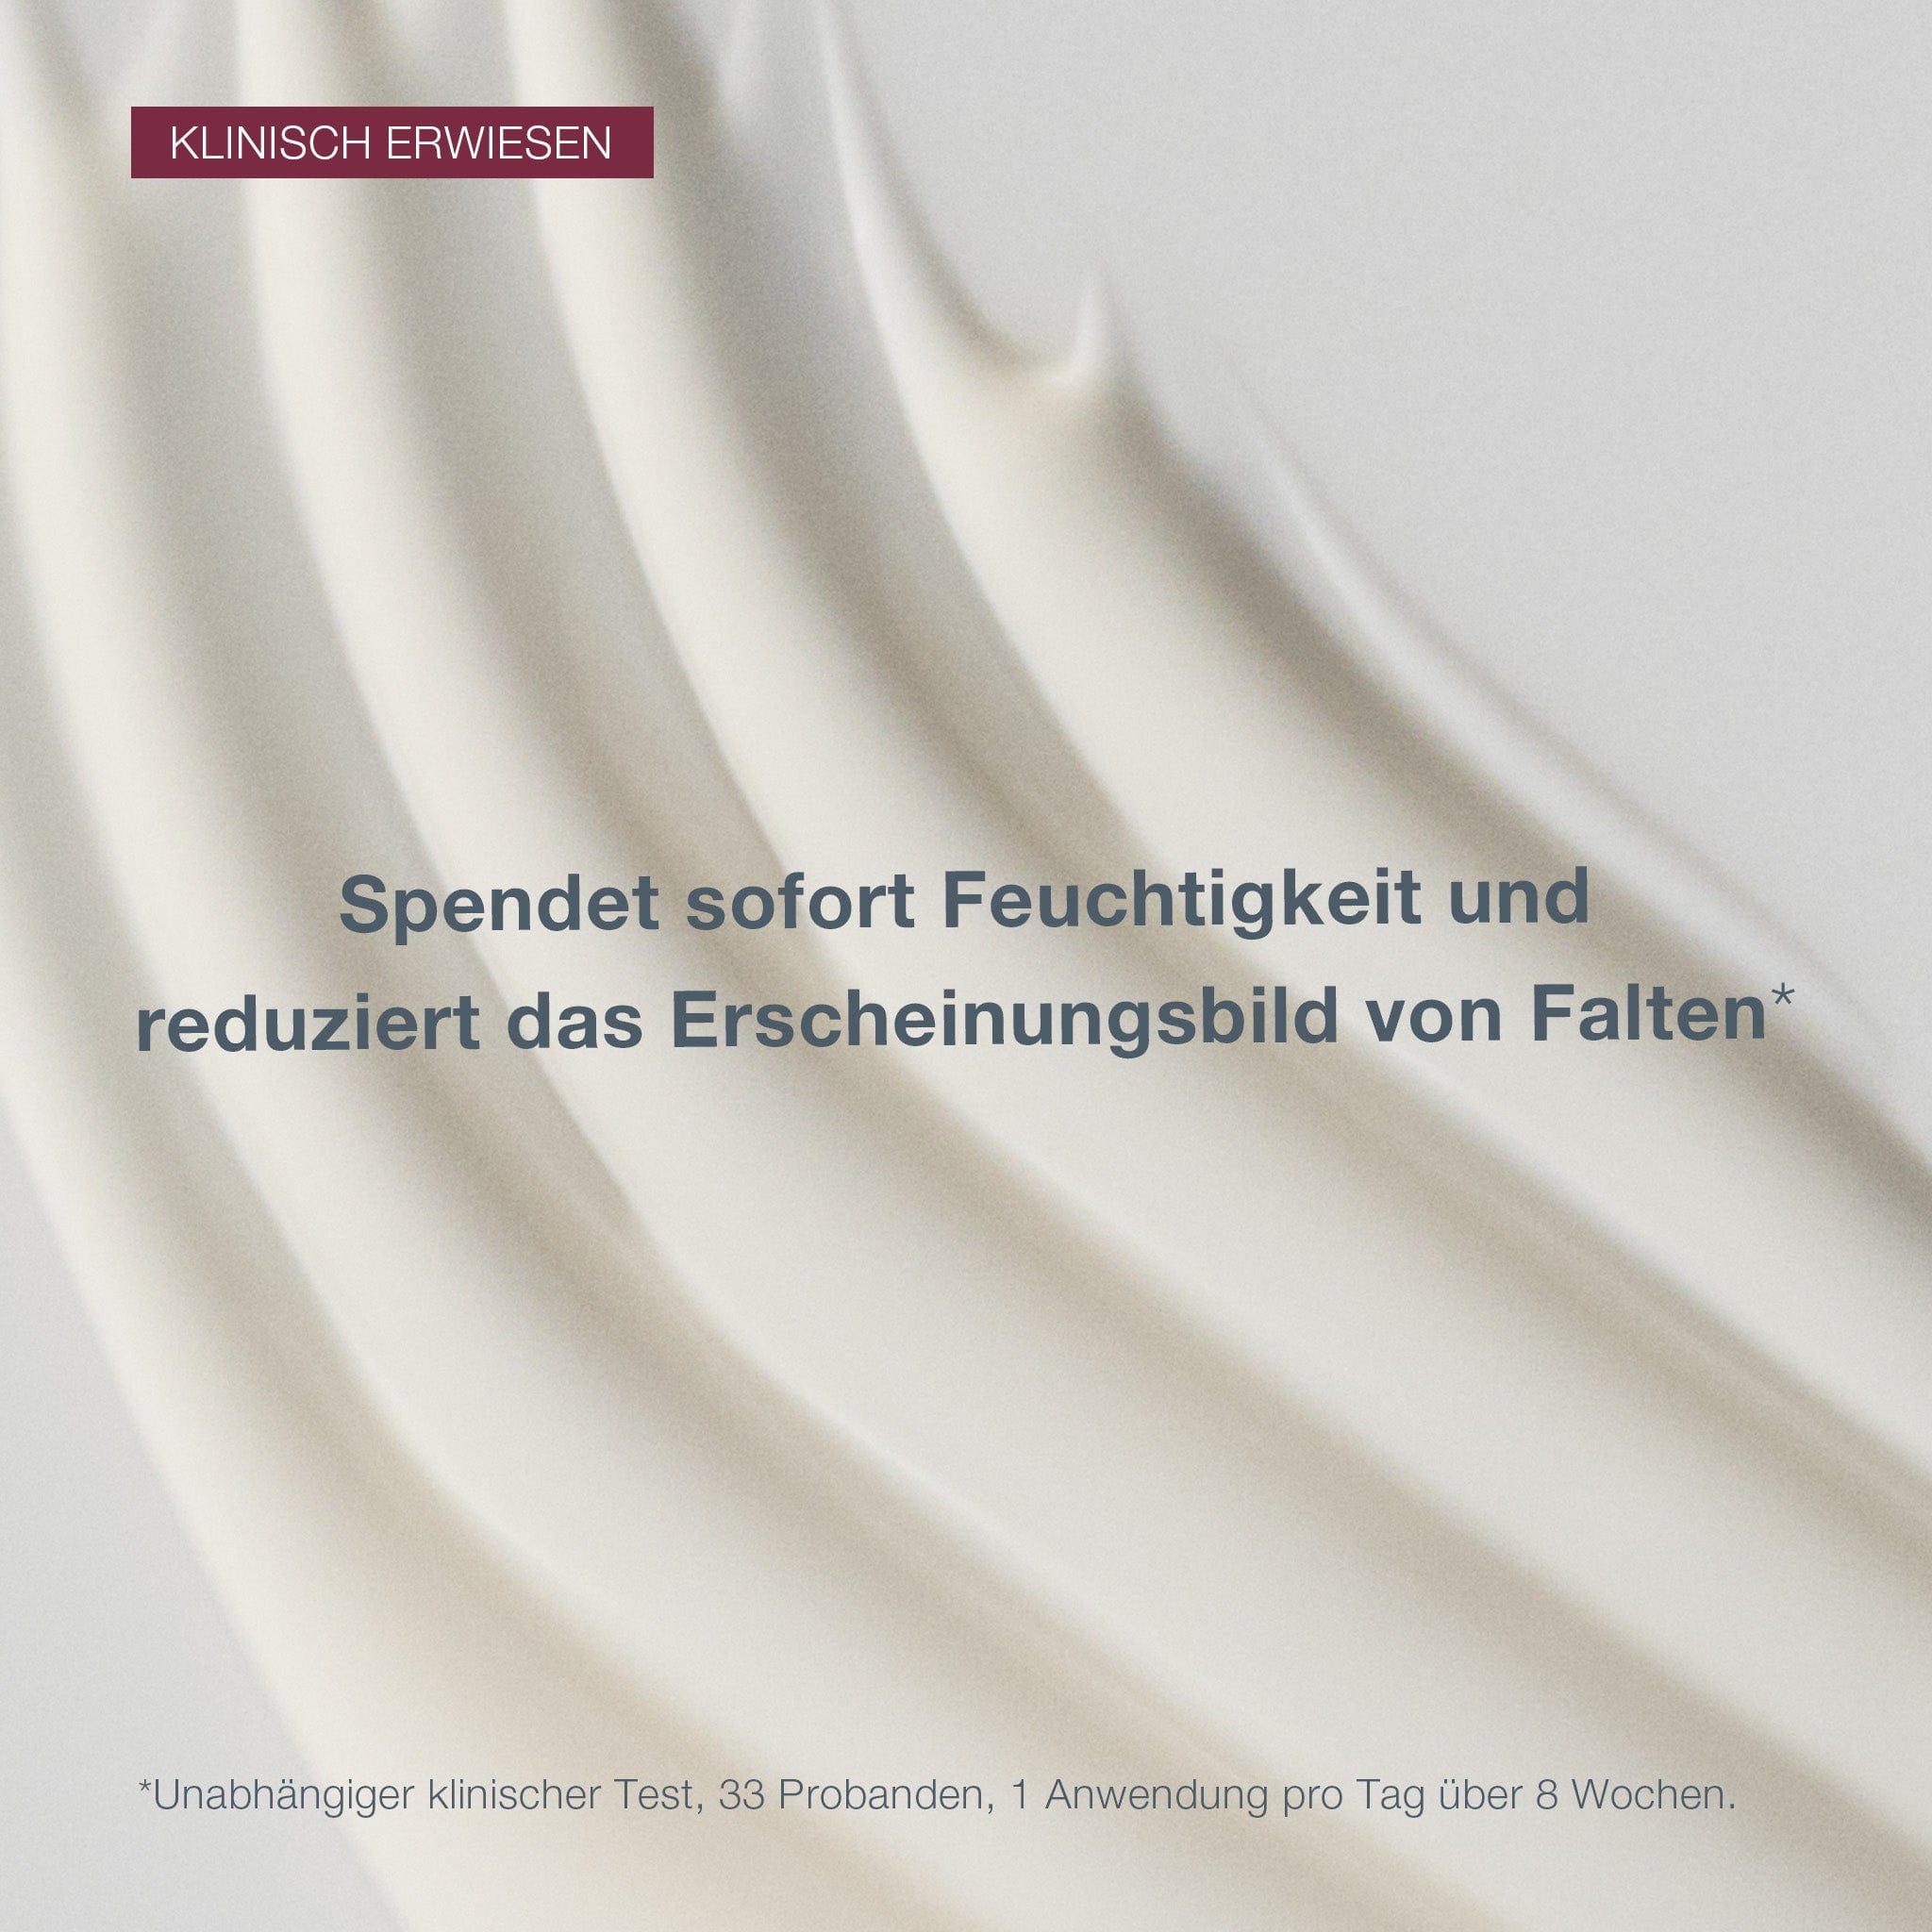 Eine Nahaufnahme von Dynamic Skin Recovery SPF50, einer weißen, cremigen Substanz mit deutschem Text, der die feuchtigkeitsspendende und faltenhemmende Wirkung des Produkts anpreist, einschließlich seiner Anti-Aging-Tagespflege-Eigenschaften.